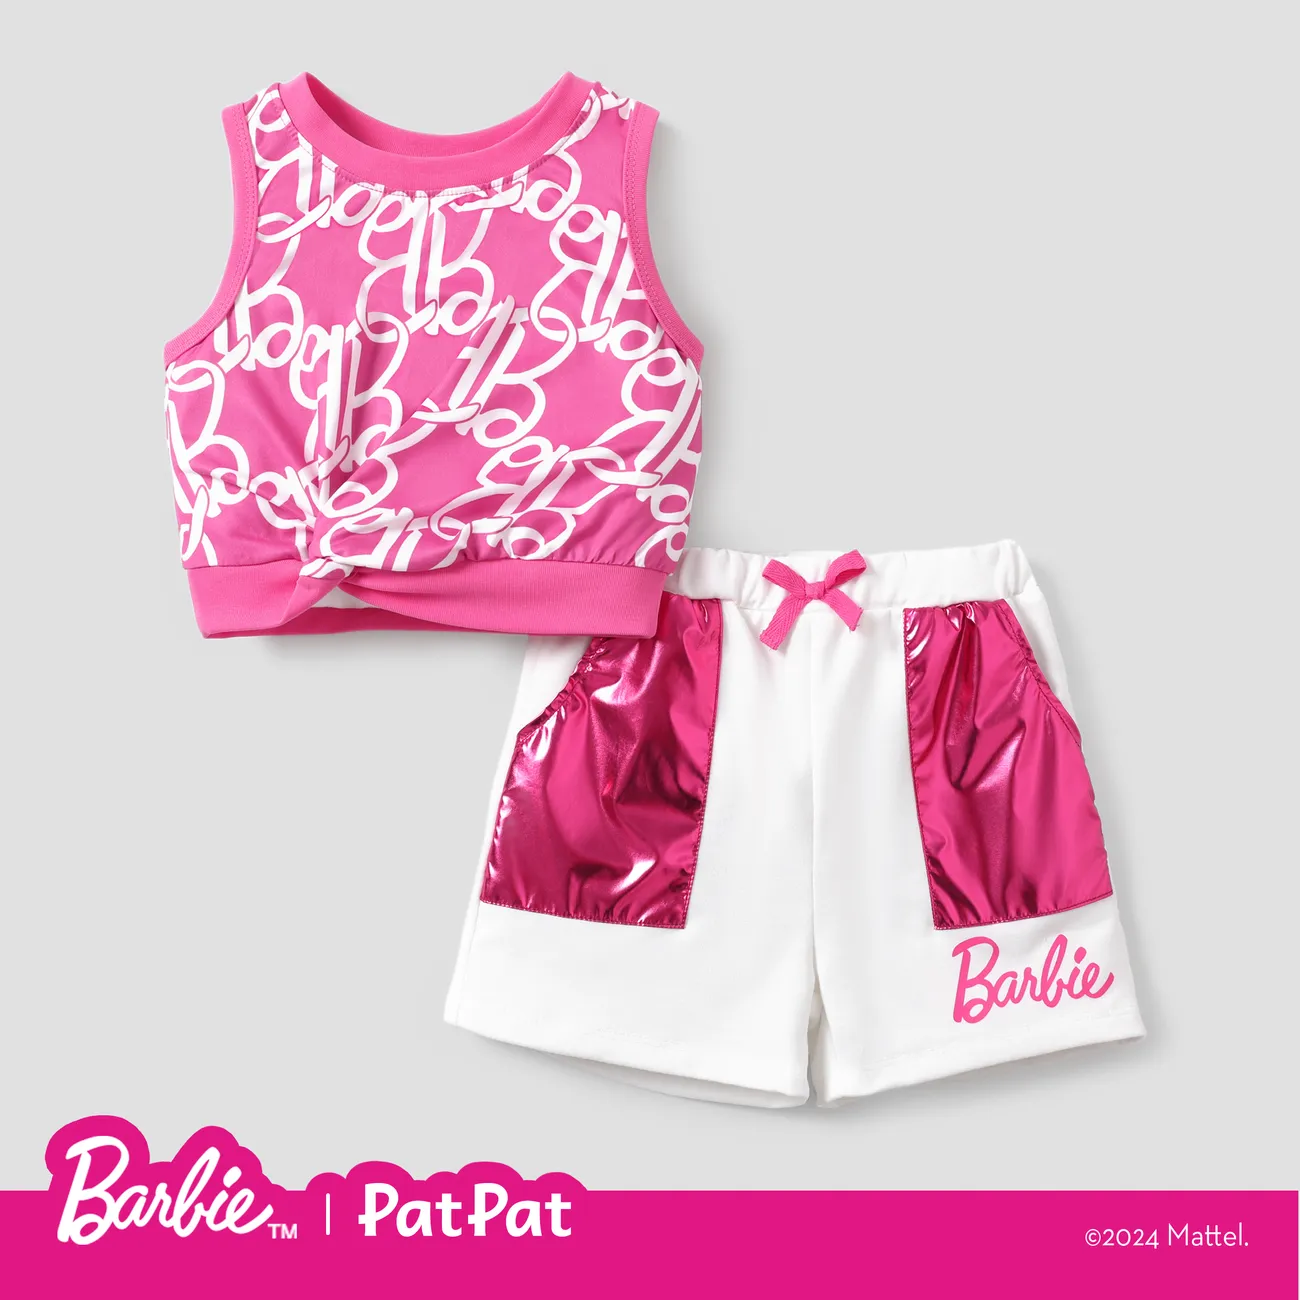 Barbie 2 unidades Menina Recorte Bonito Conjuntos Roseo big image 1